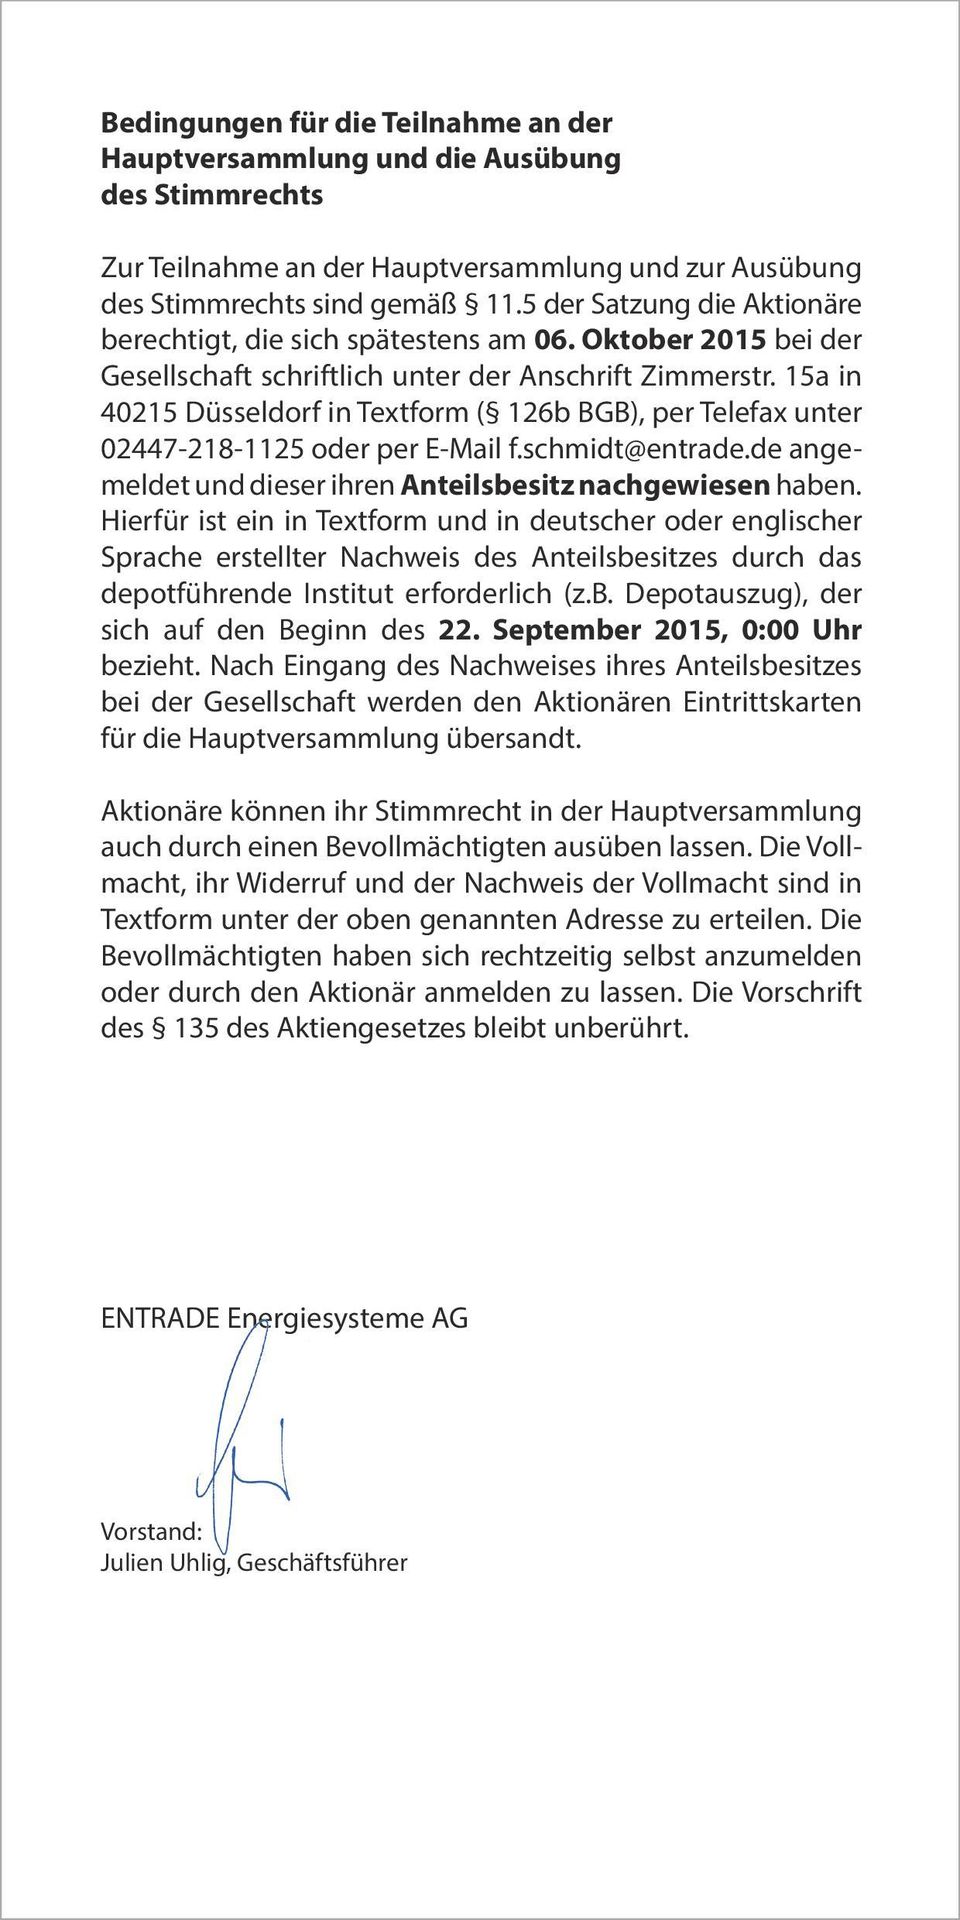 15a in 40215 Düsseldorf in Textform ( 126b BGB), per Telefax unter 02447-218-1125 oder per E-Mail f.schmidt@entrade.de angemeldet und dieser ihren Anteilsbesitz nachgewiesen haben.